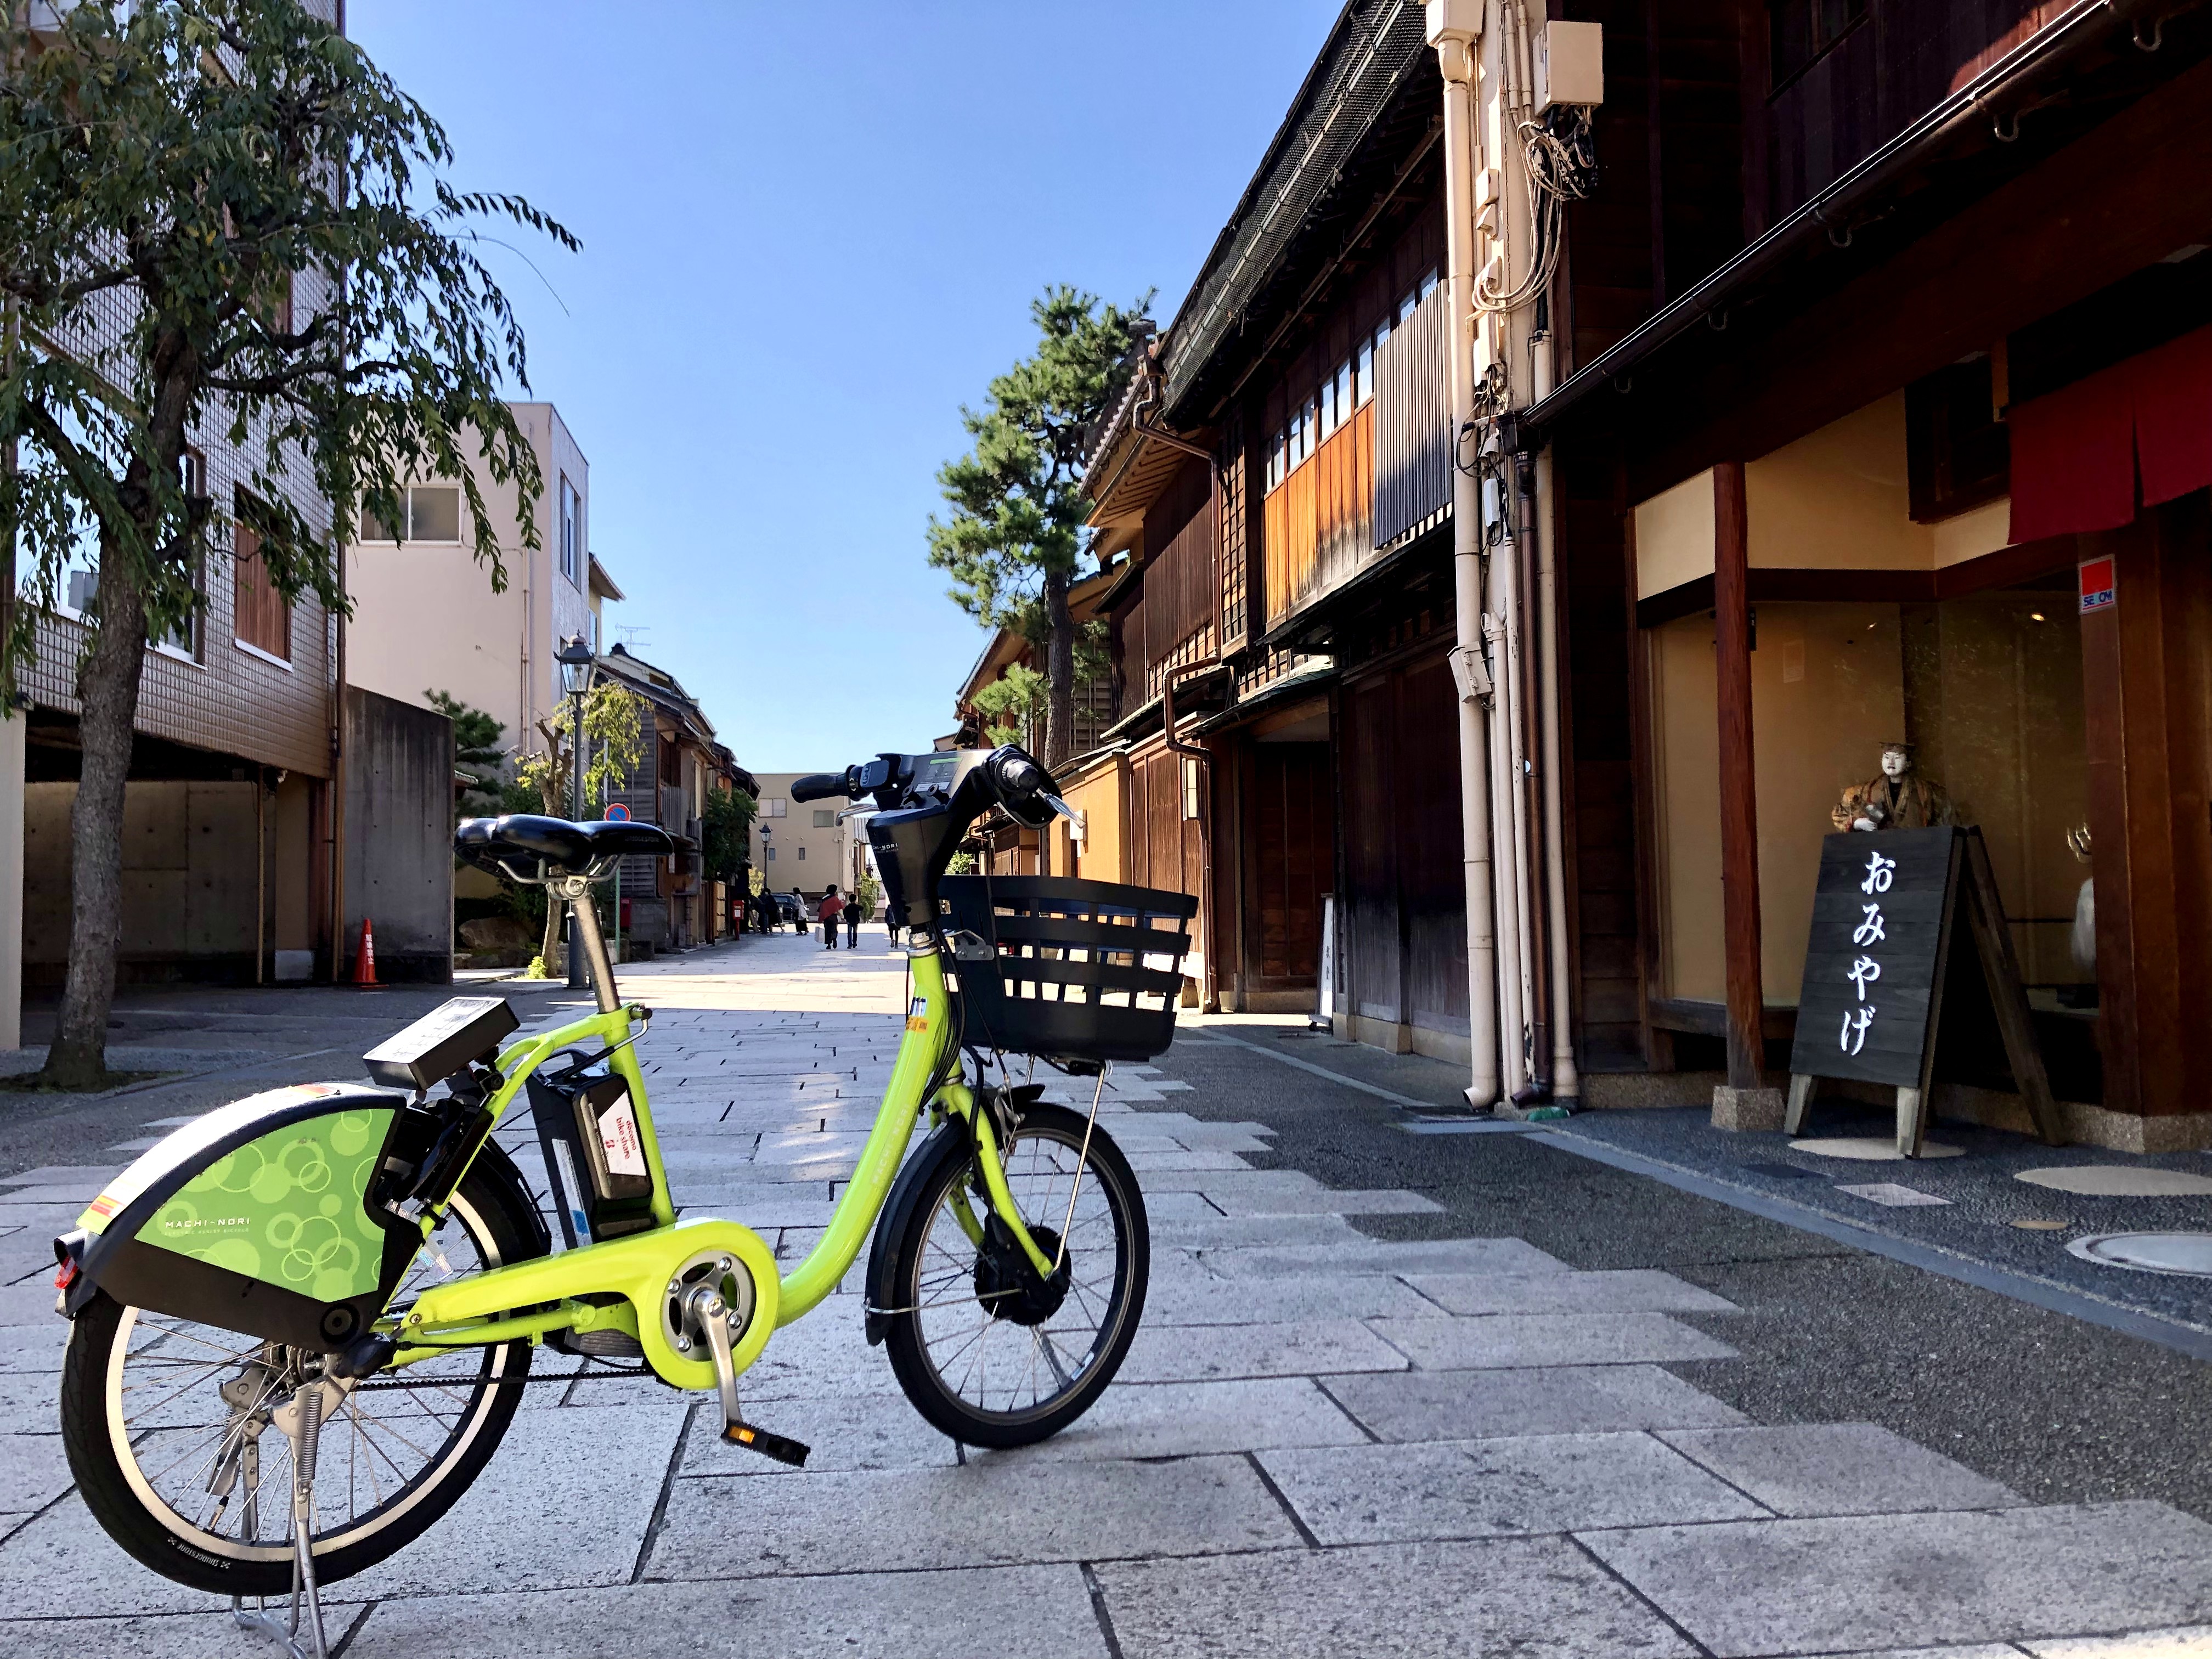 【石川県】シェアサイクル「まちのり」で秋の金沢周遊